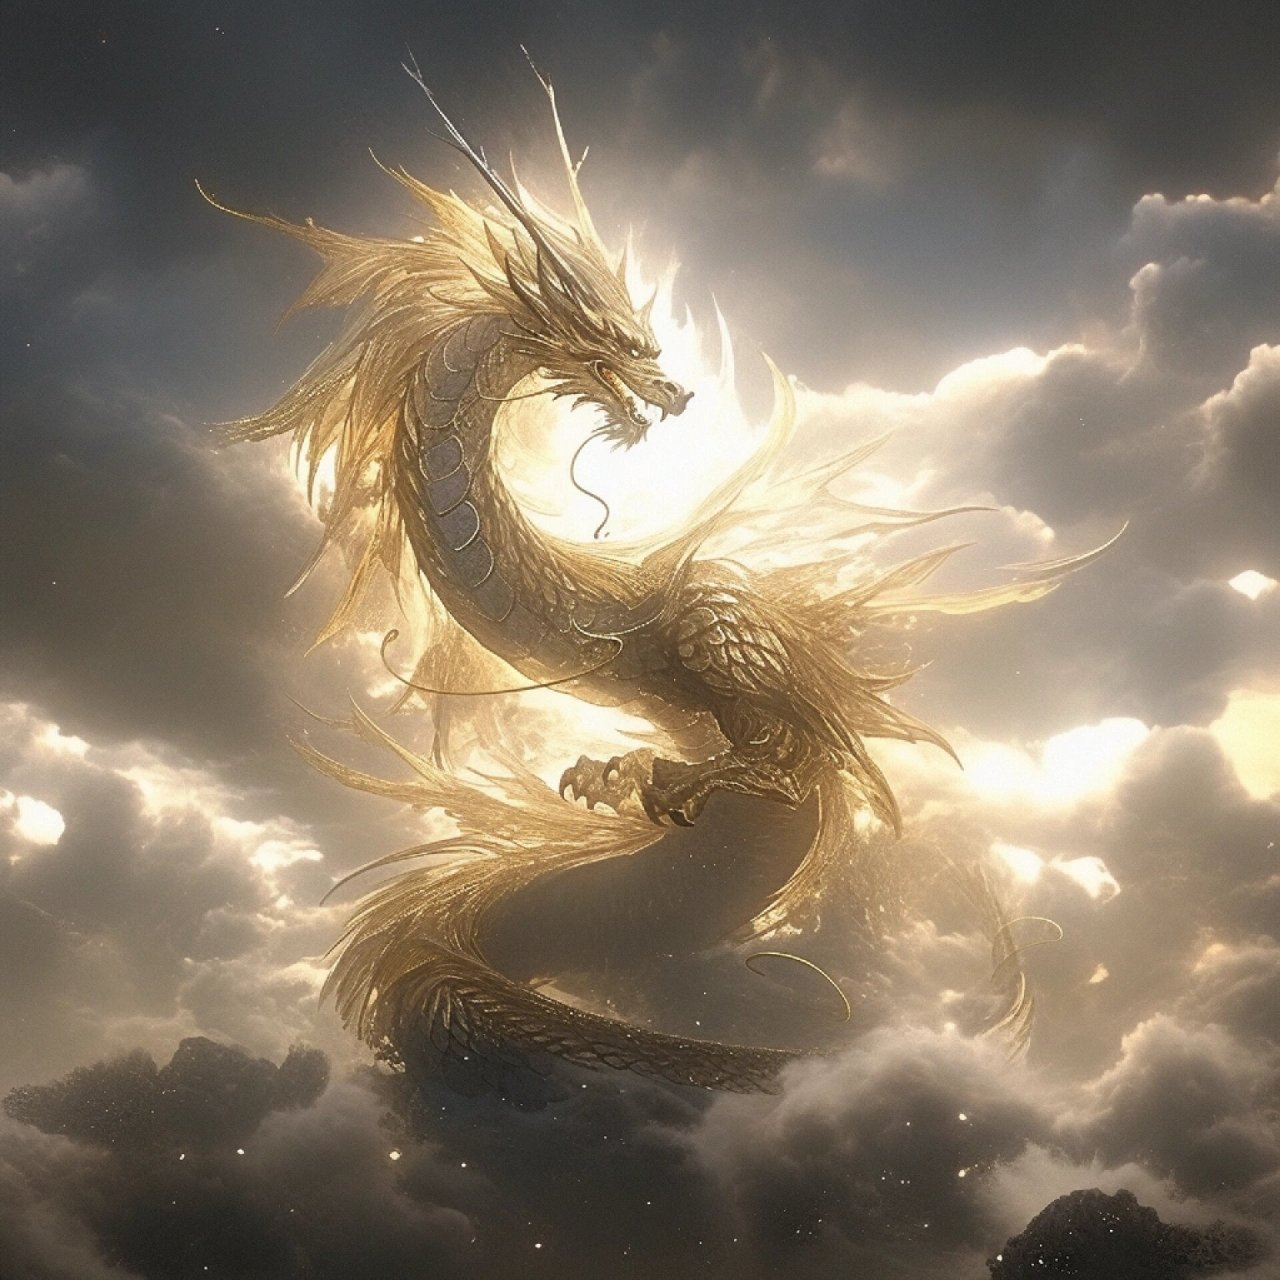 飞天神龙,犹如九天仙梦一般的存在,拥有惊人的超能力